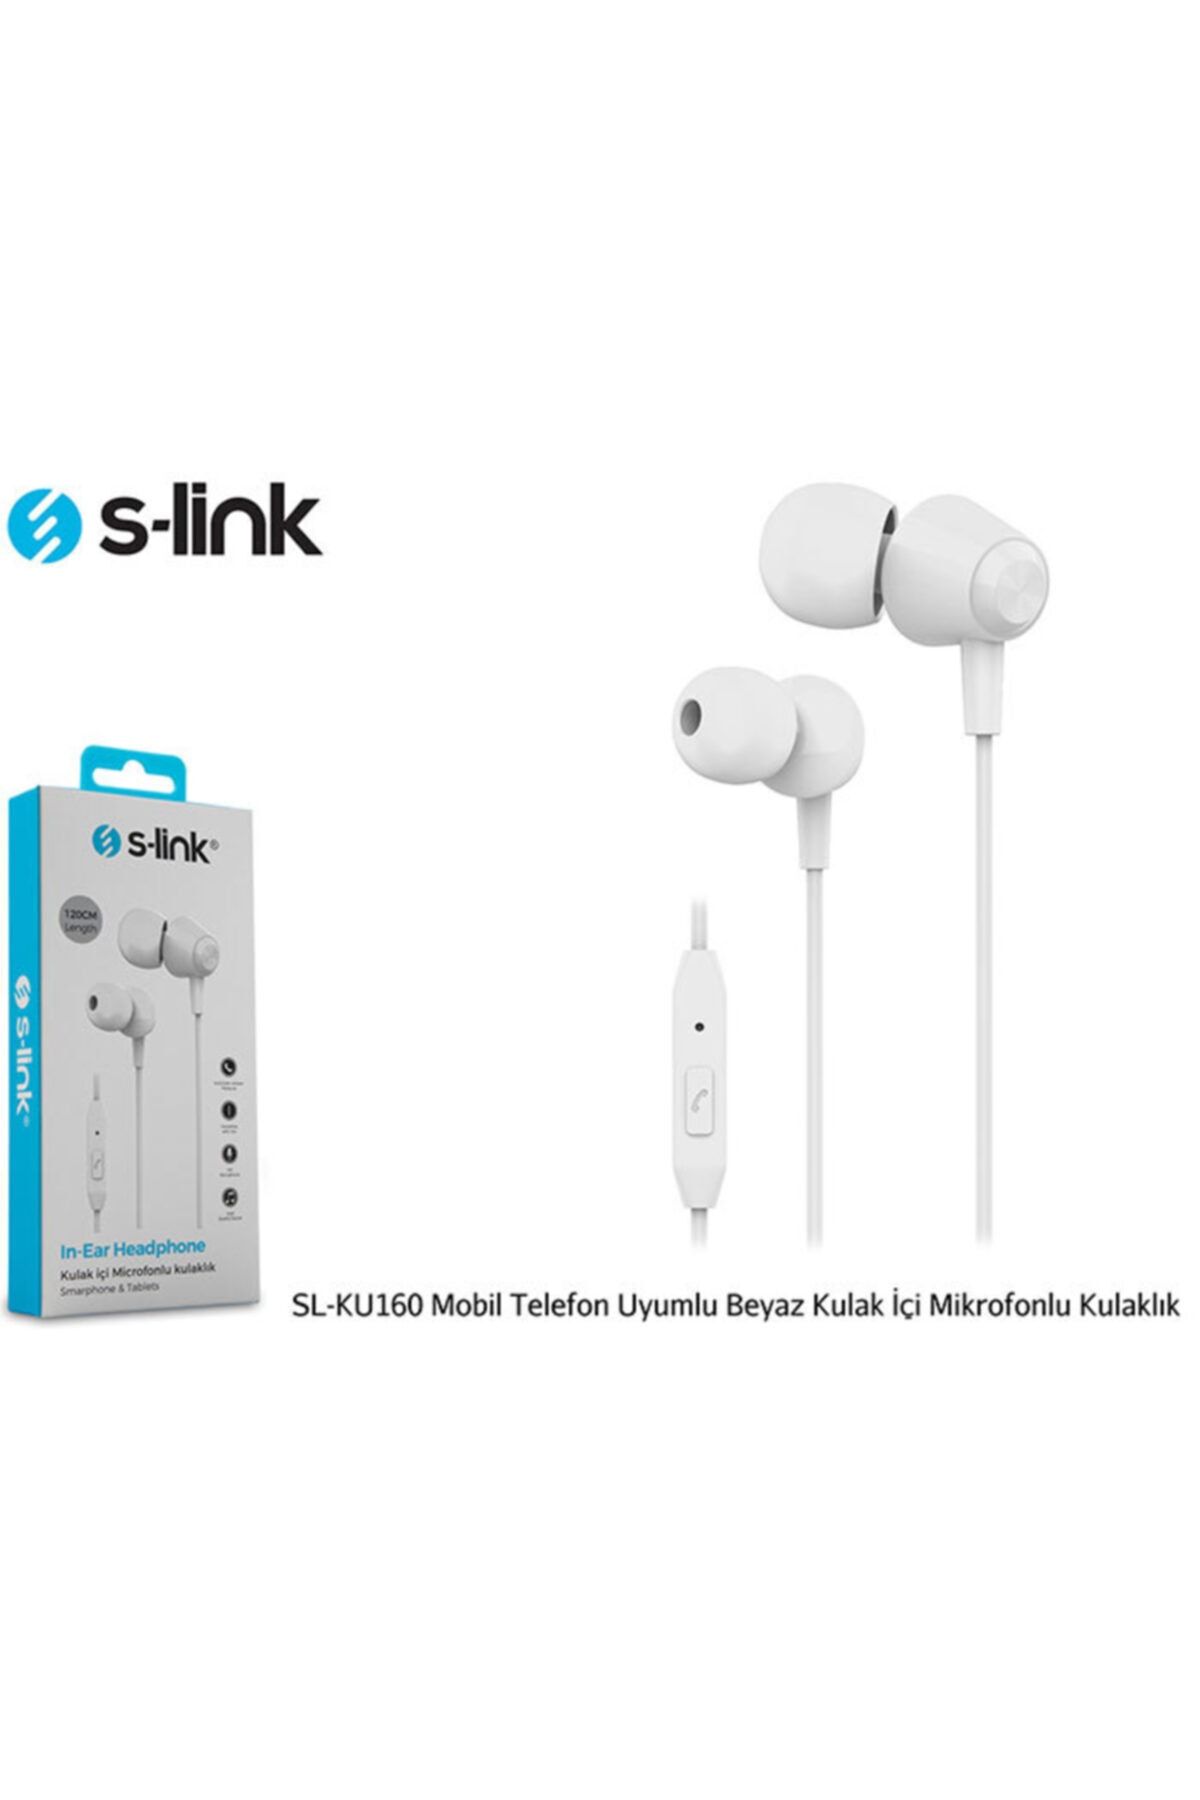 S-Link Sl-ku160 Mobil Telefon Uyumlu Beyaz Kulak Içi Mikrofonlu Kulaklık